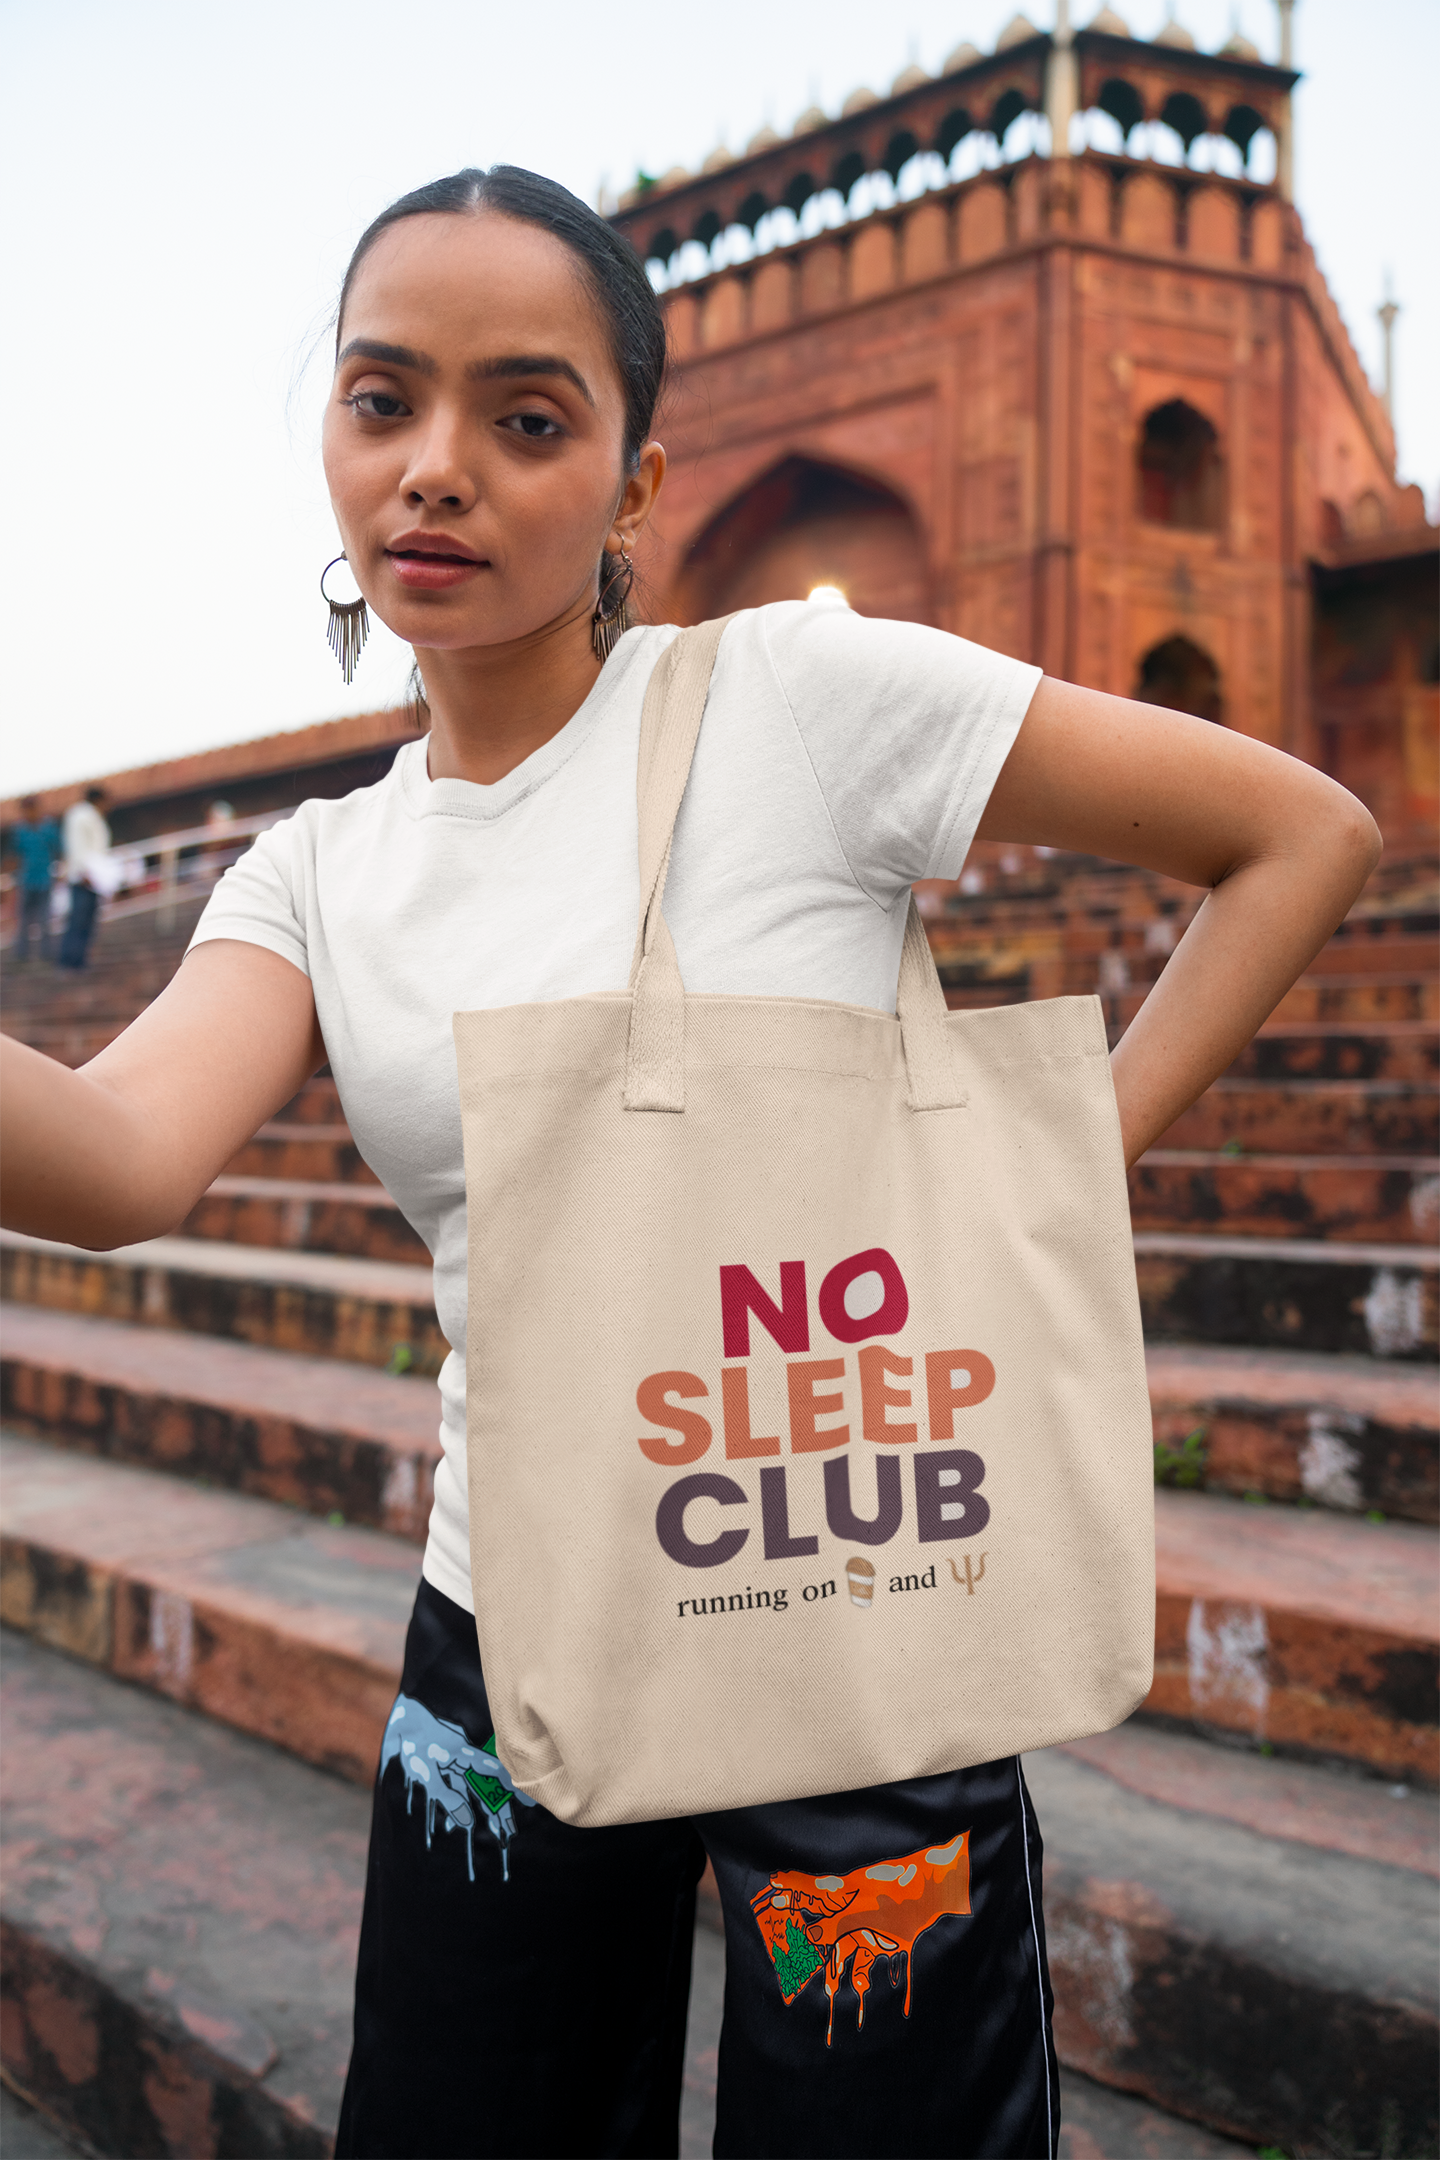 No Sleep Club Tote Bag